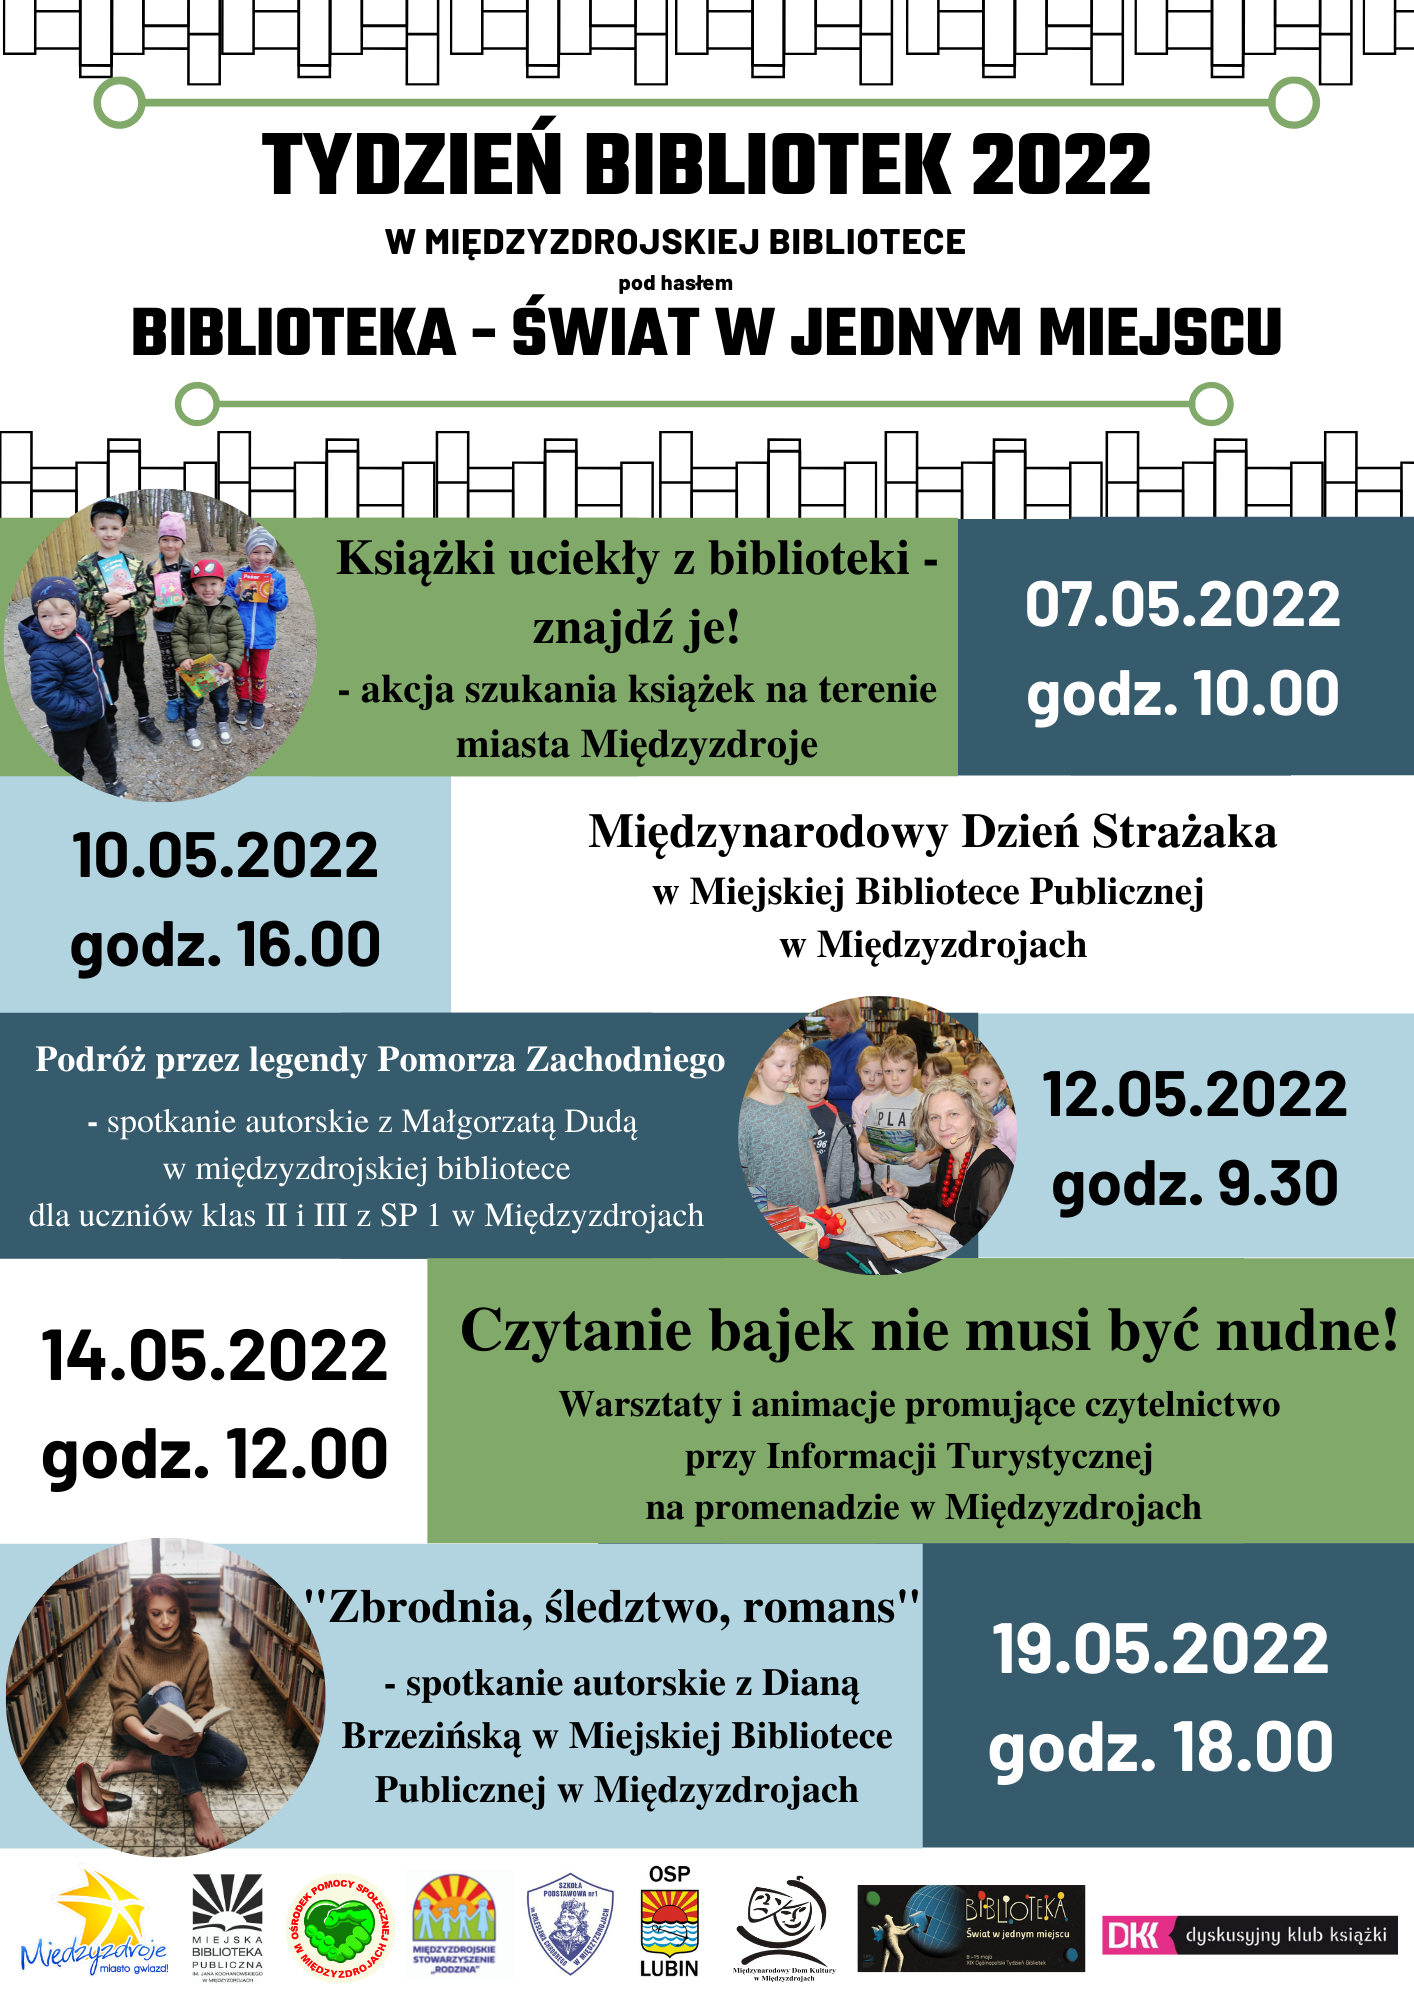 Tydzień Bibliotek 2022 w międzyzdrojskiej bibliotece - 8-15 maja 2022 r.